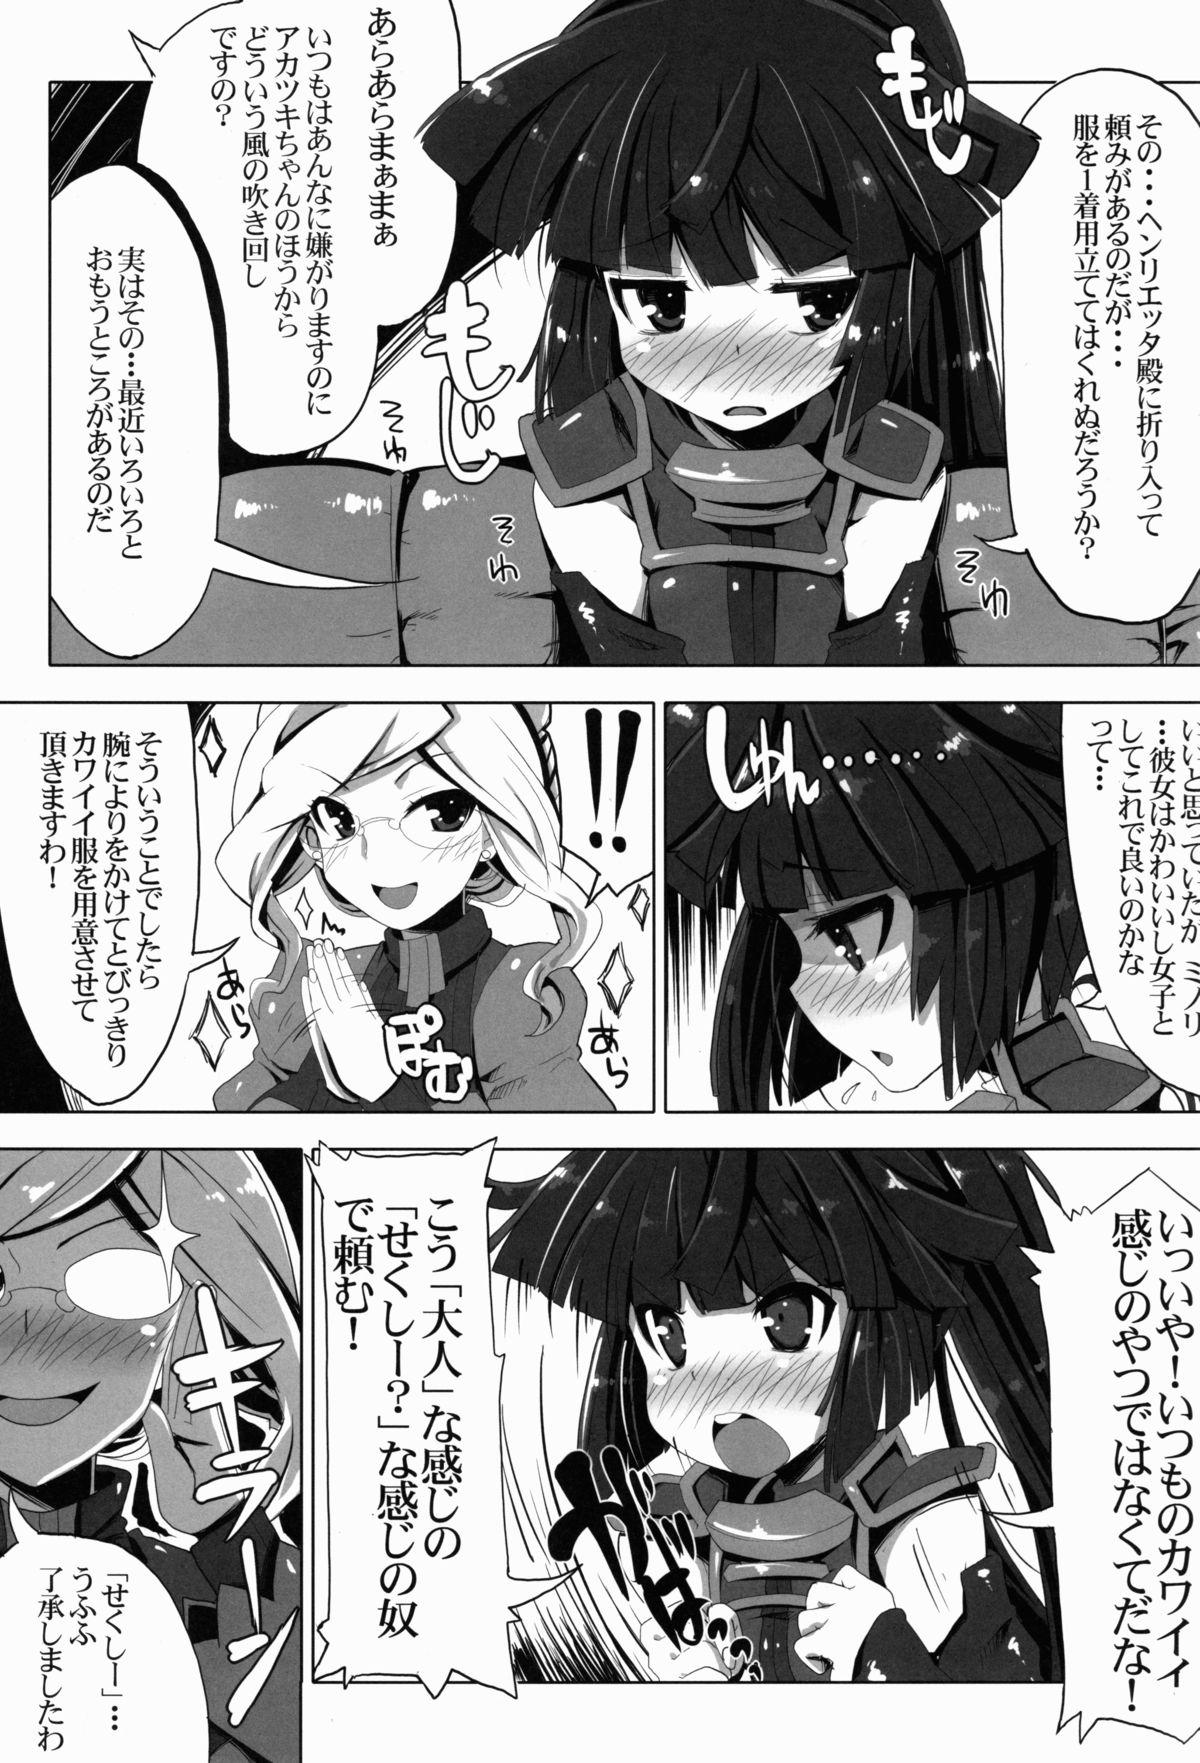 Female Orgasm MMO ni Okeru Rare Soubitte Ero Soubi no Koto da yo ne! - Log horizon Trimmed - Page 3